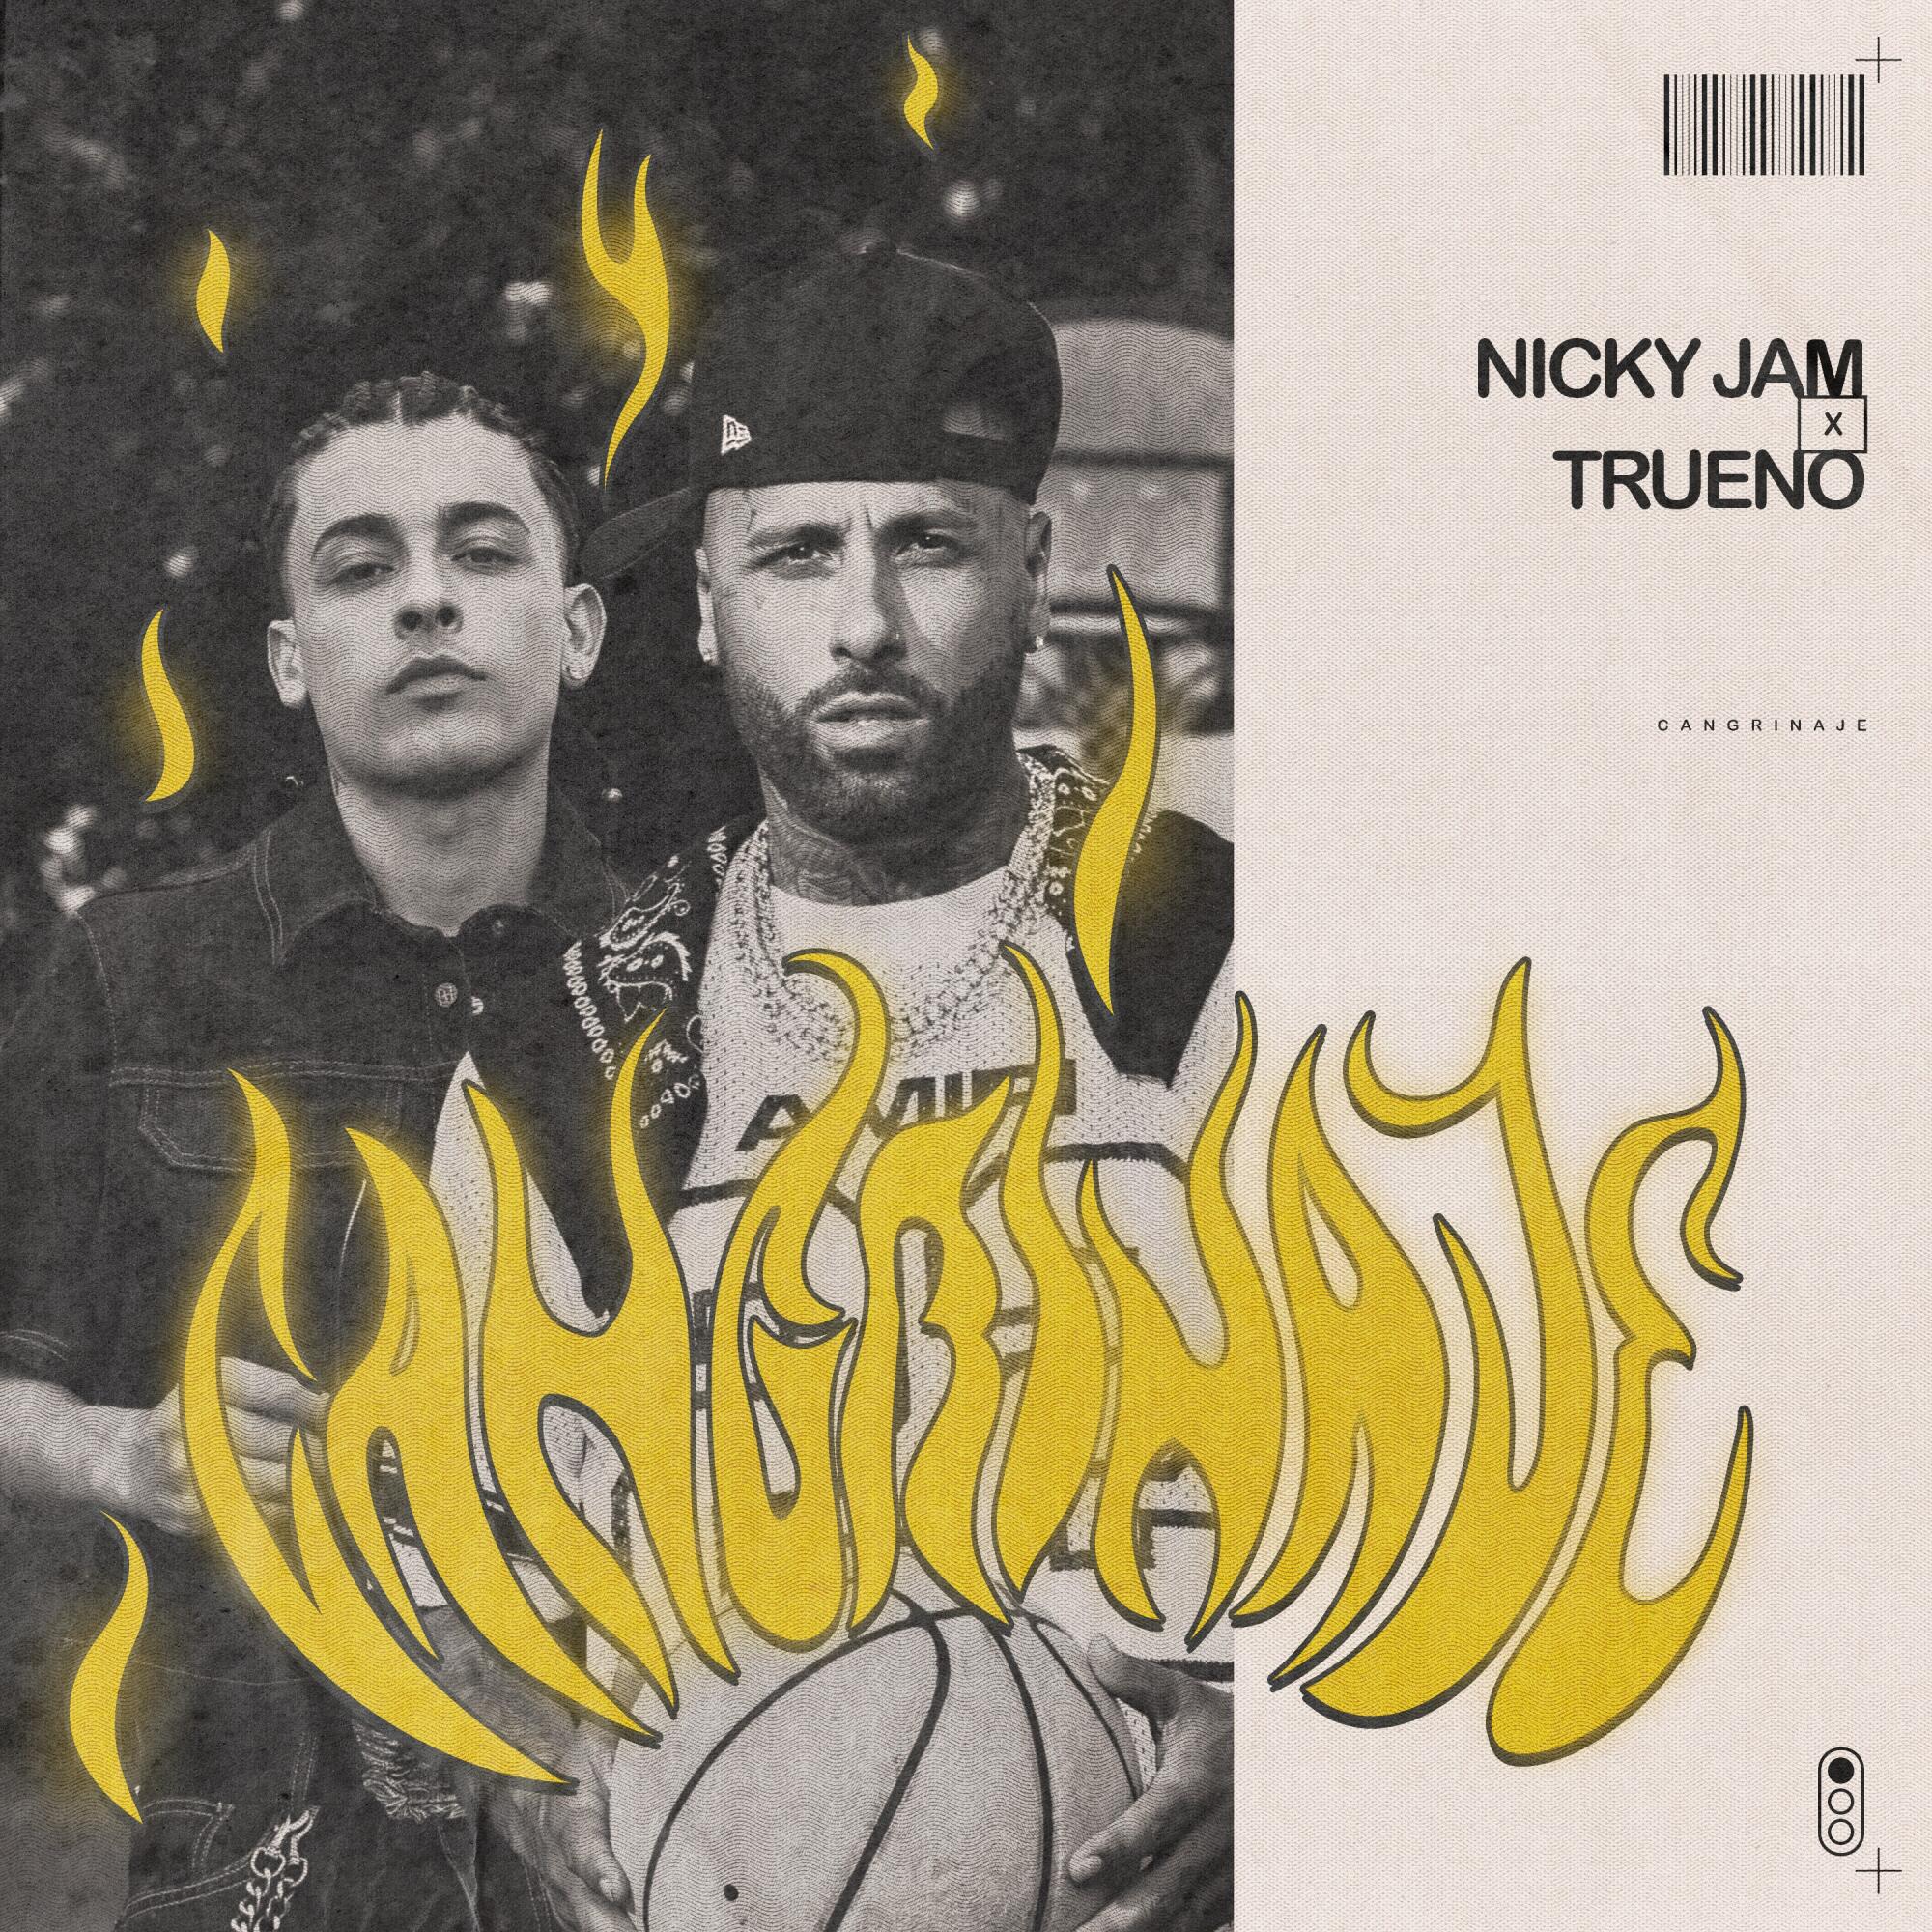 Portada del sencillo 'Cangrinaje" de Nicky Jam y Trueno.